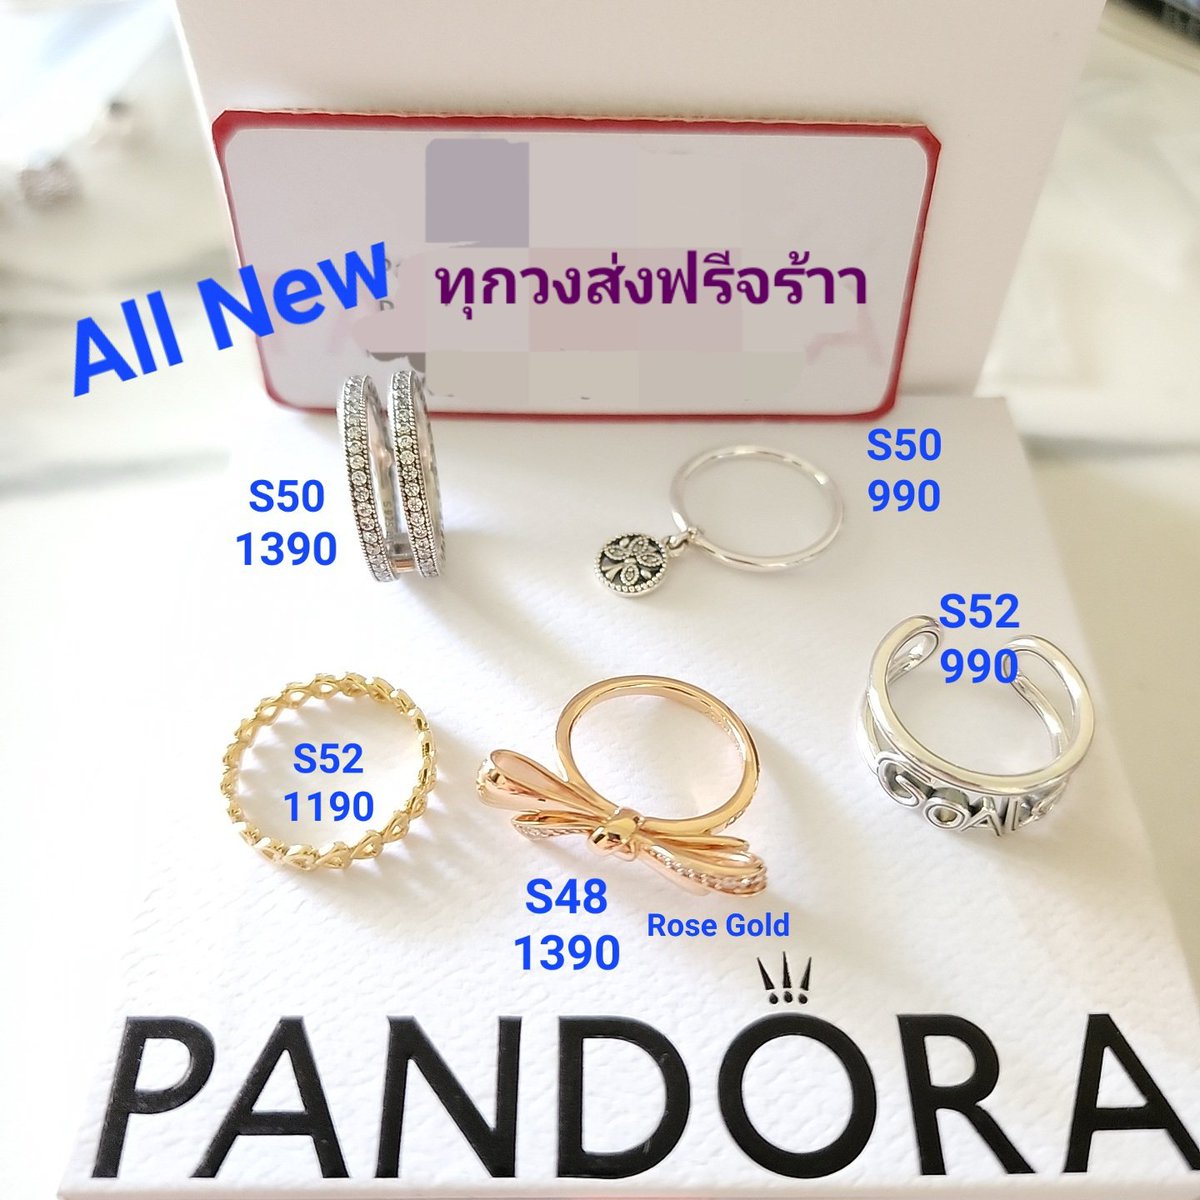 Sale‼️ แหวน Pandora 
ของใหม่ทั้งหมดนะคะ ส่งฟรีทุกวงค่ะ 

            💥💕ของแท้ 💯% จ้า💕💥

#ส่งต่อpandora #ส่งต่อแพนโดร่า
#pandoraมือ2 #แพนโดร่ามือ2
#Pandoraมือสอง #แพนโดร่ามือสอง
#PandoraThailand #Pandorath #ส่งต่อเครื่องประดับ